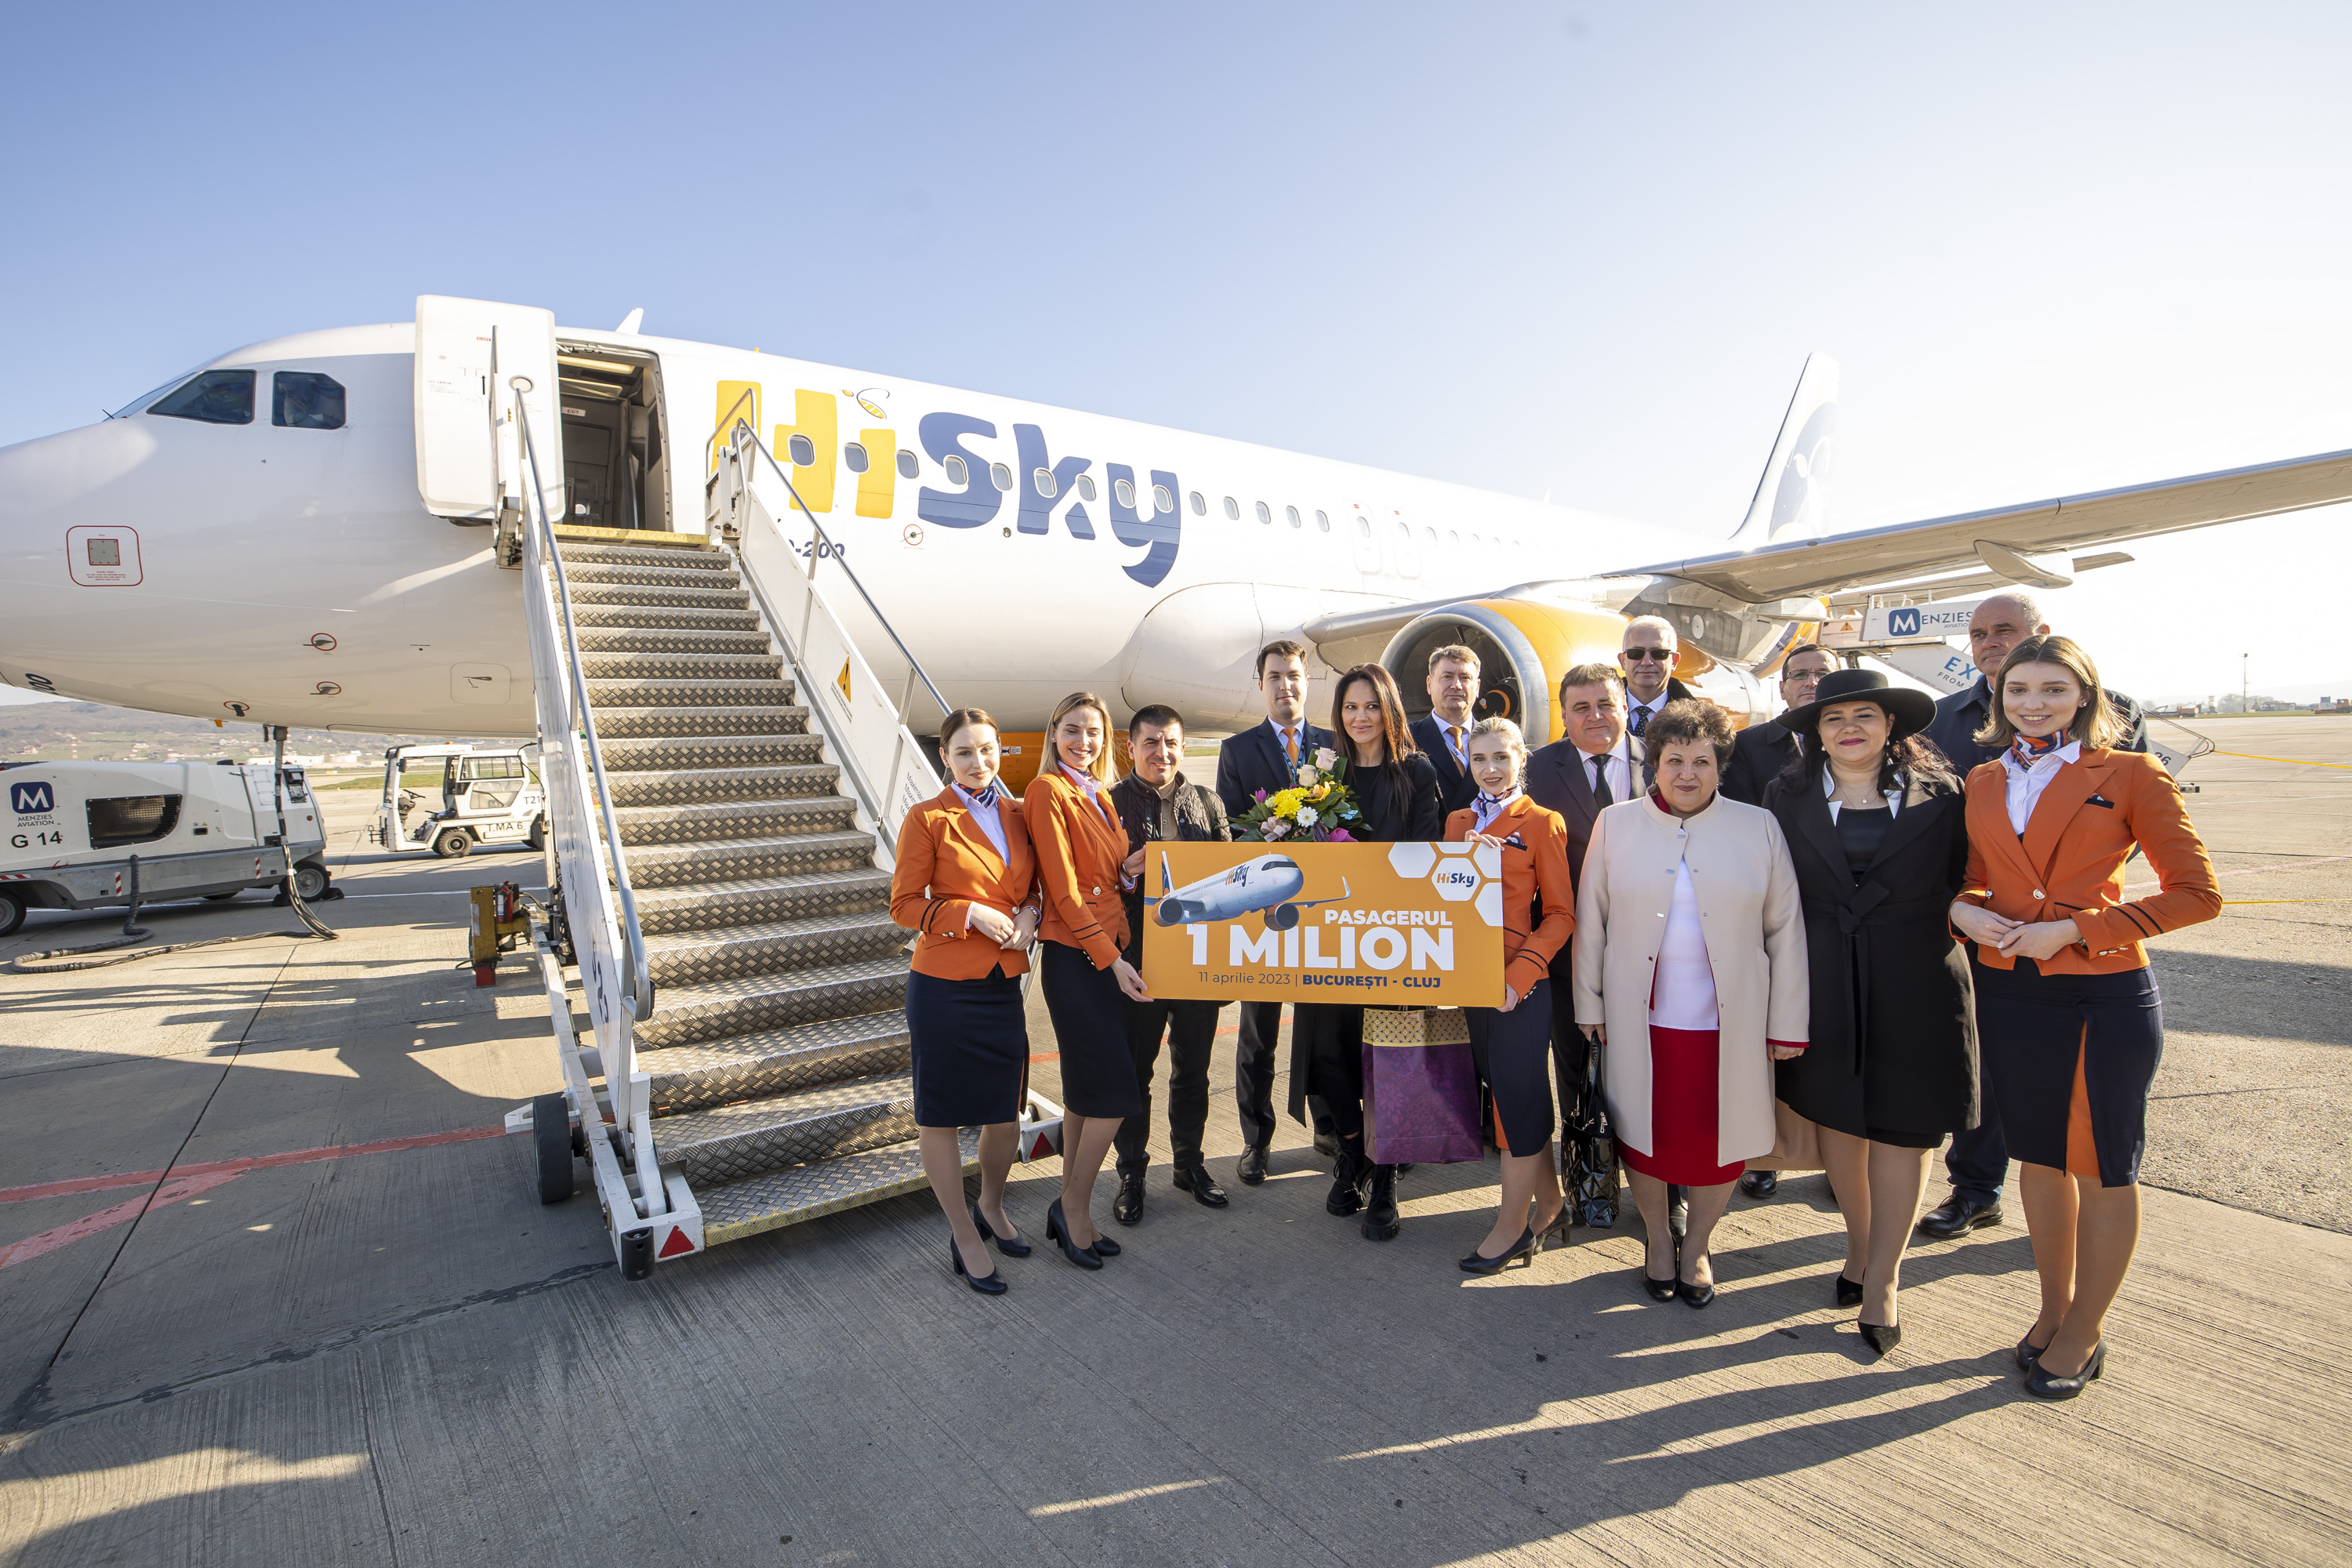 Compania aeriană HiSky și-a sărbătorit, la Aeroportul Internațional „Avram Iancu” Cluj primul milion de pasageri transportați pe toate cursele operate. FOTO: Aeroportul Internațional „Avram Iancu” Cluj